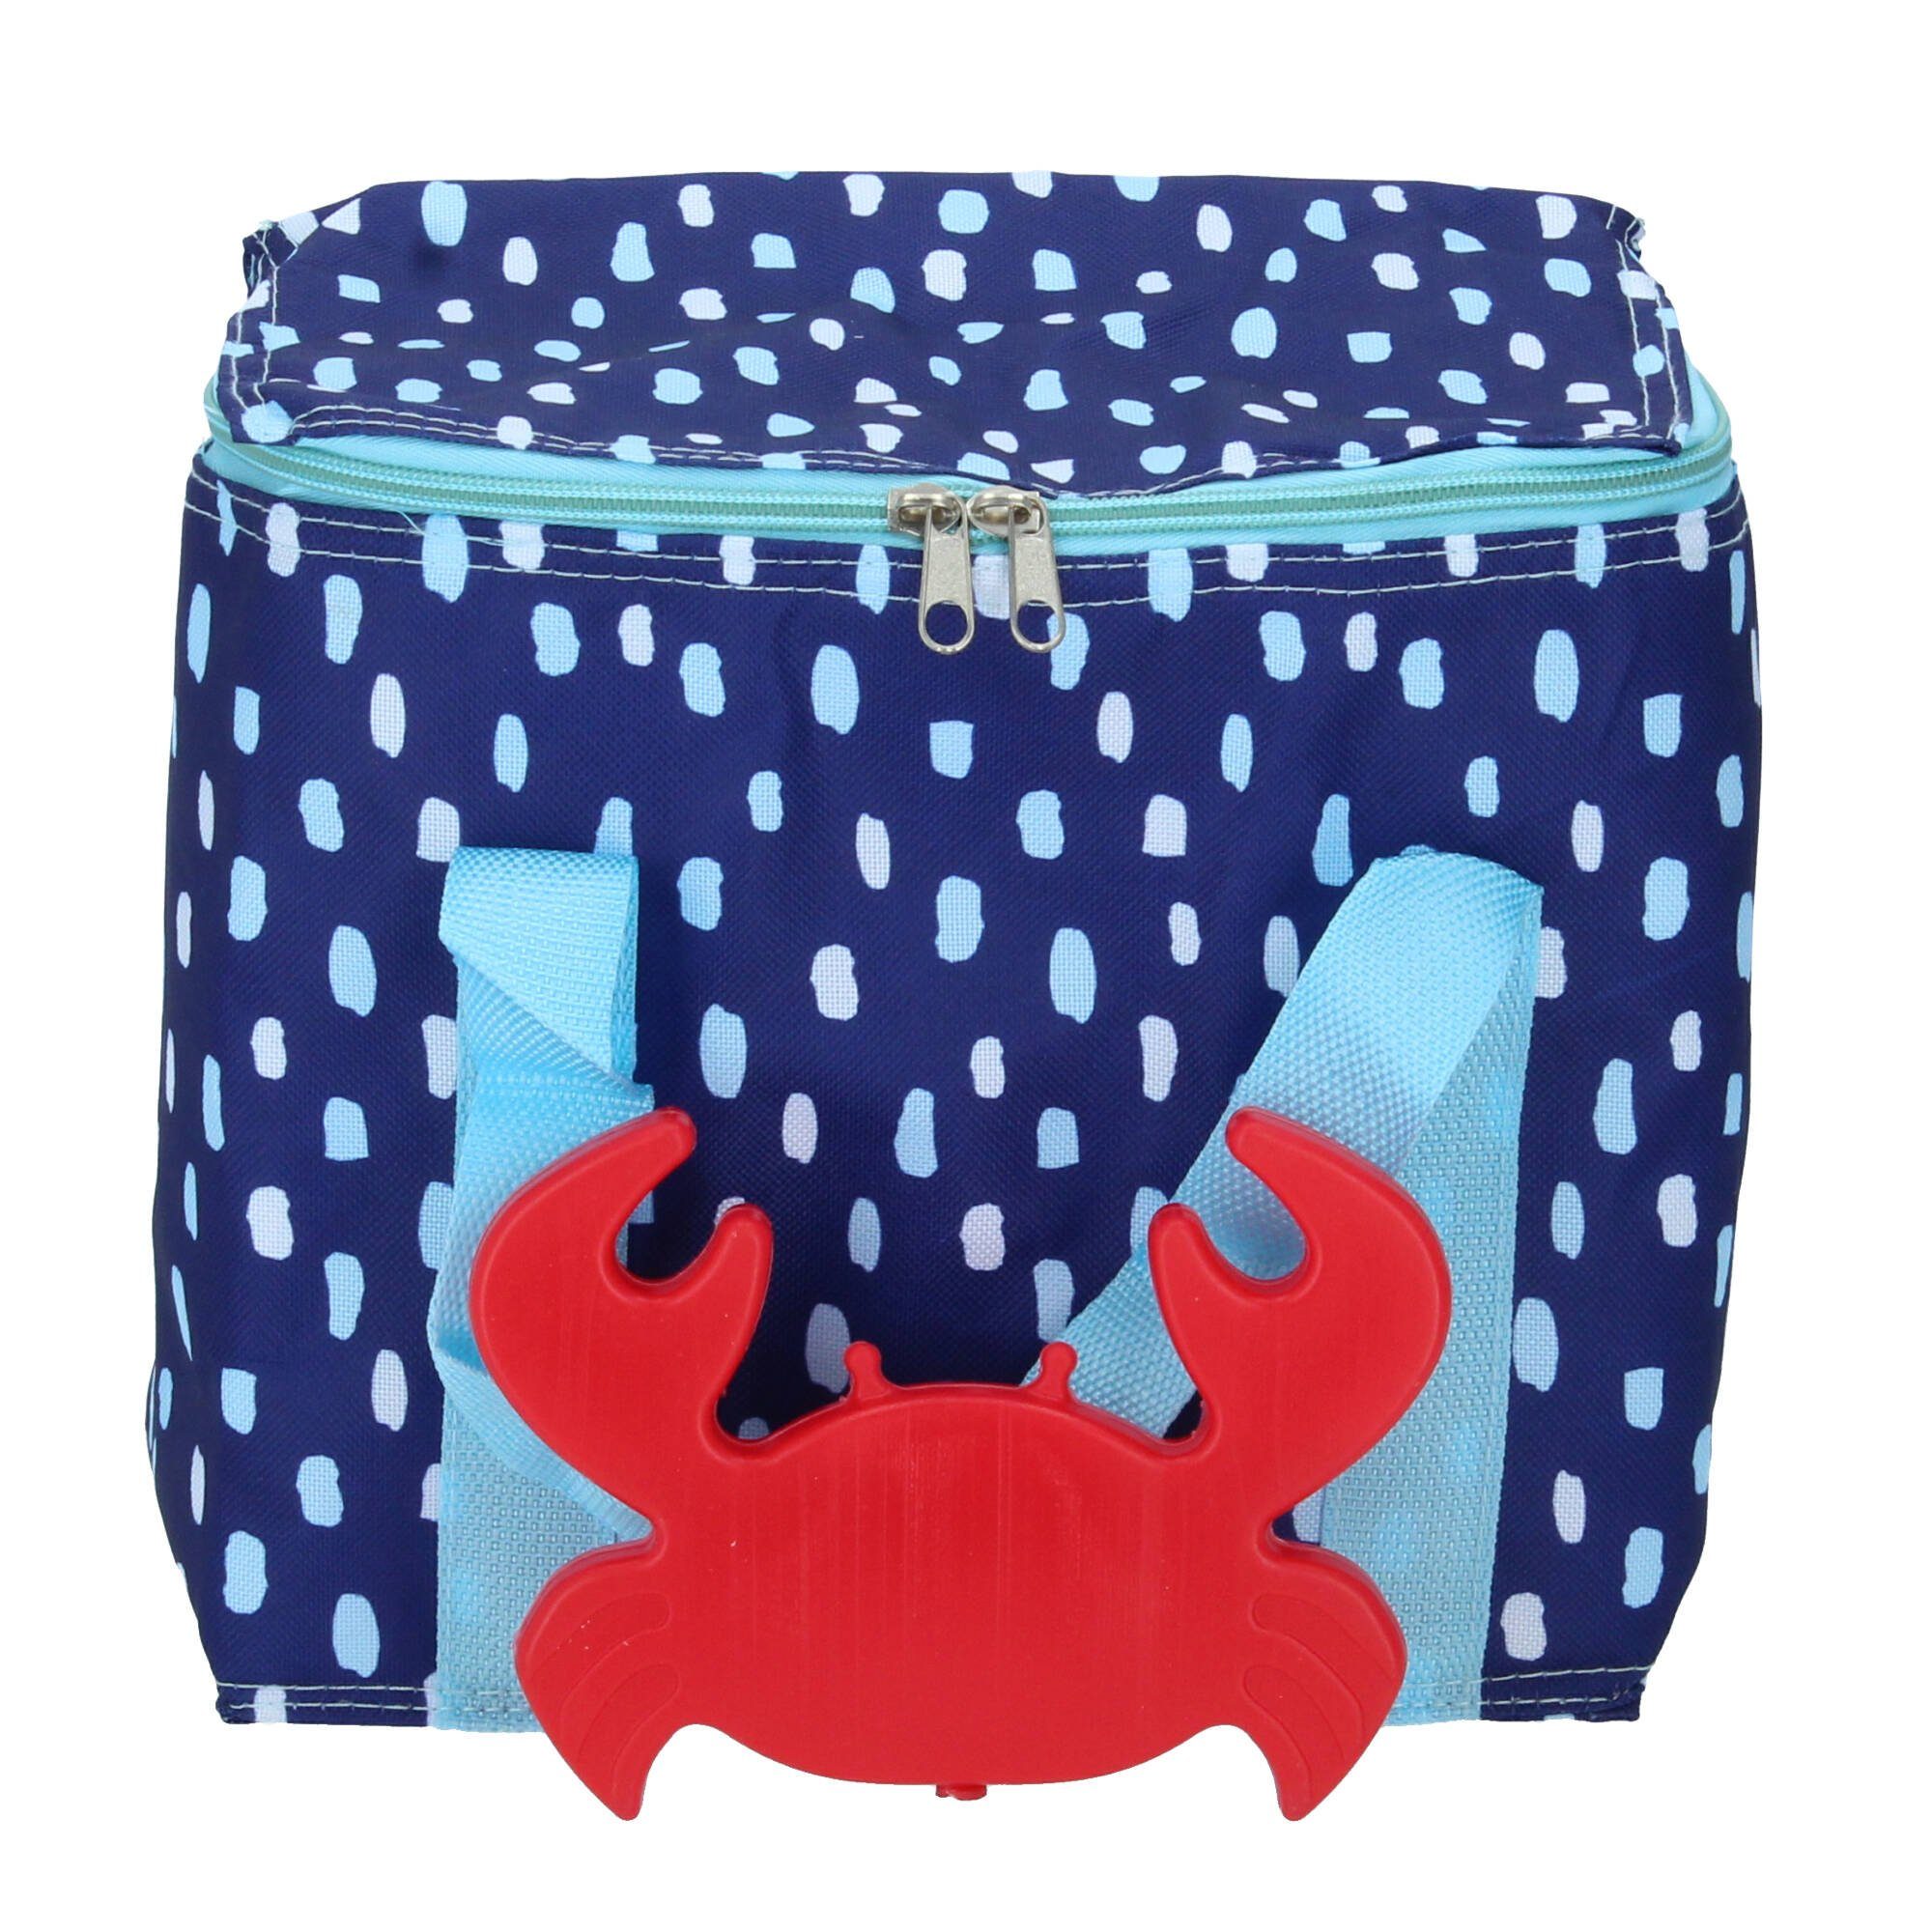 L Seaside Krabbe Porta Einkaufsshopper 7 Ladelle blau mit Kühlakku